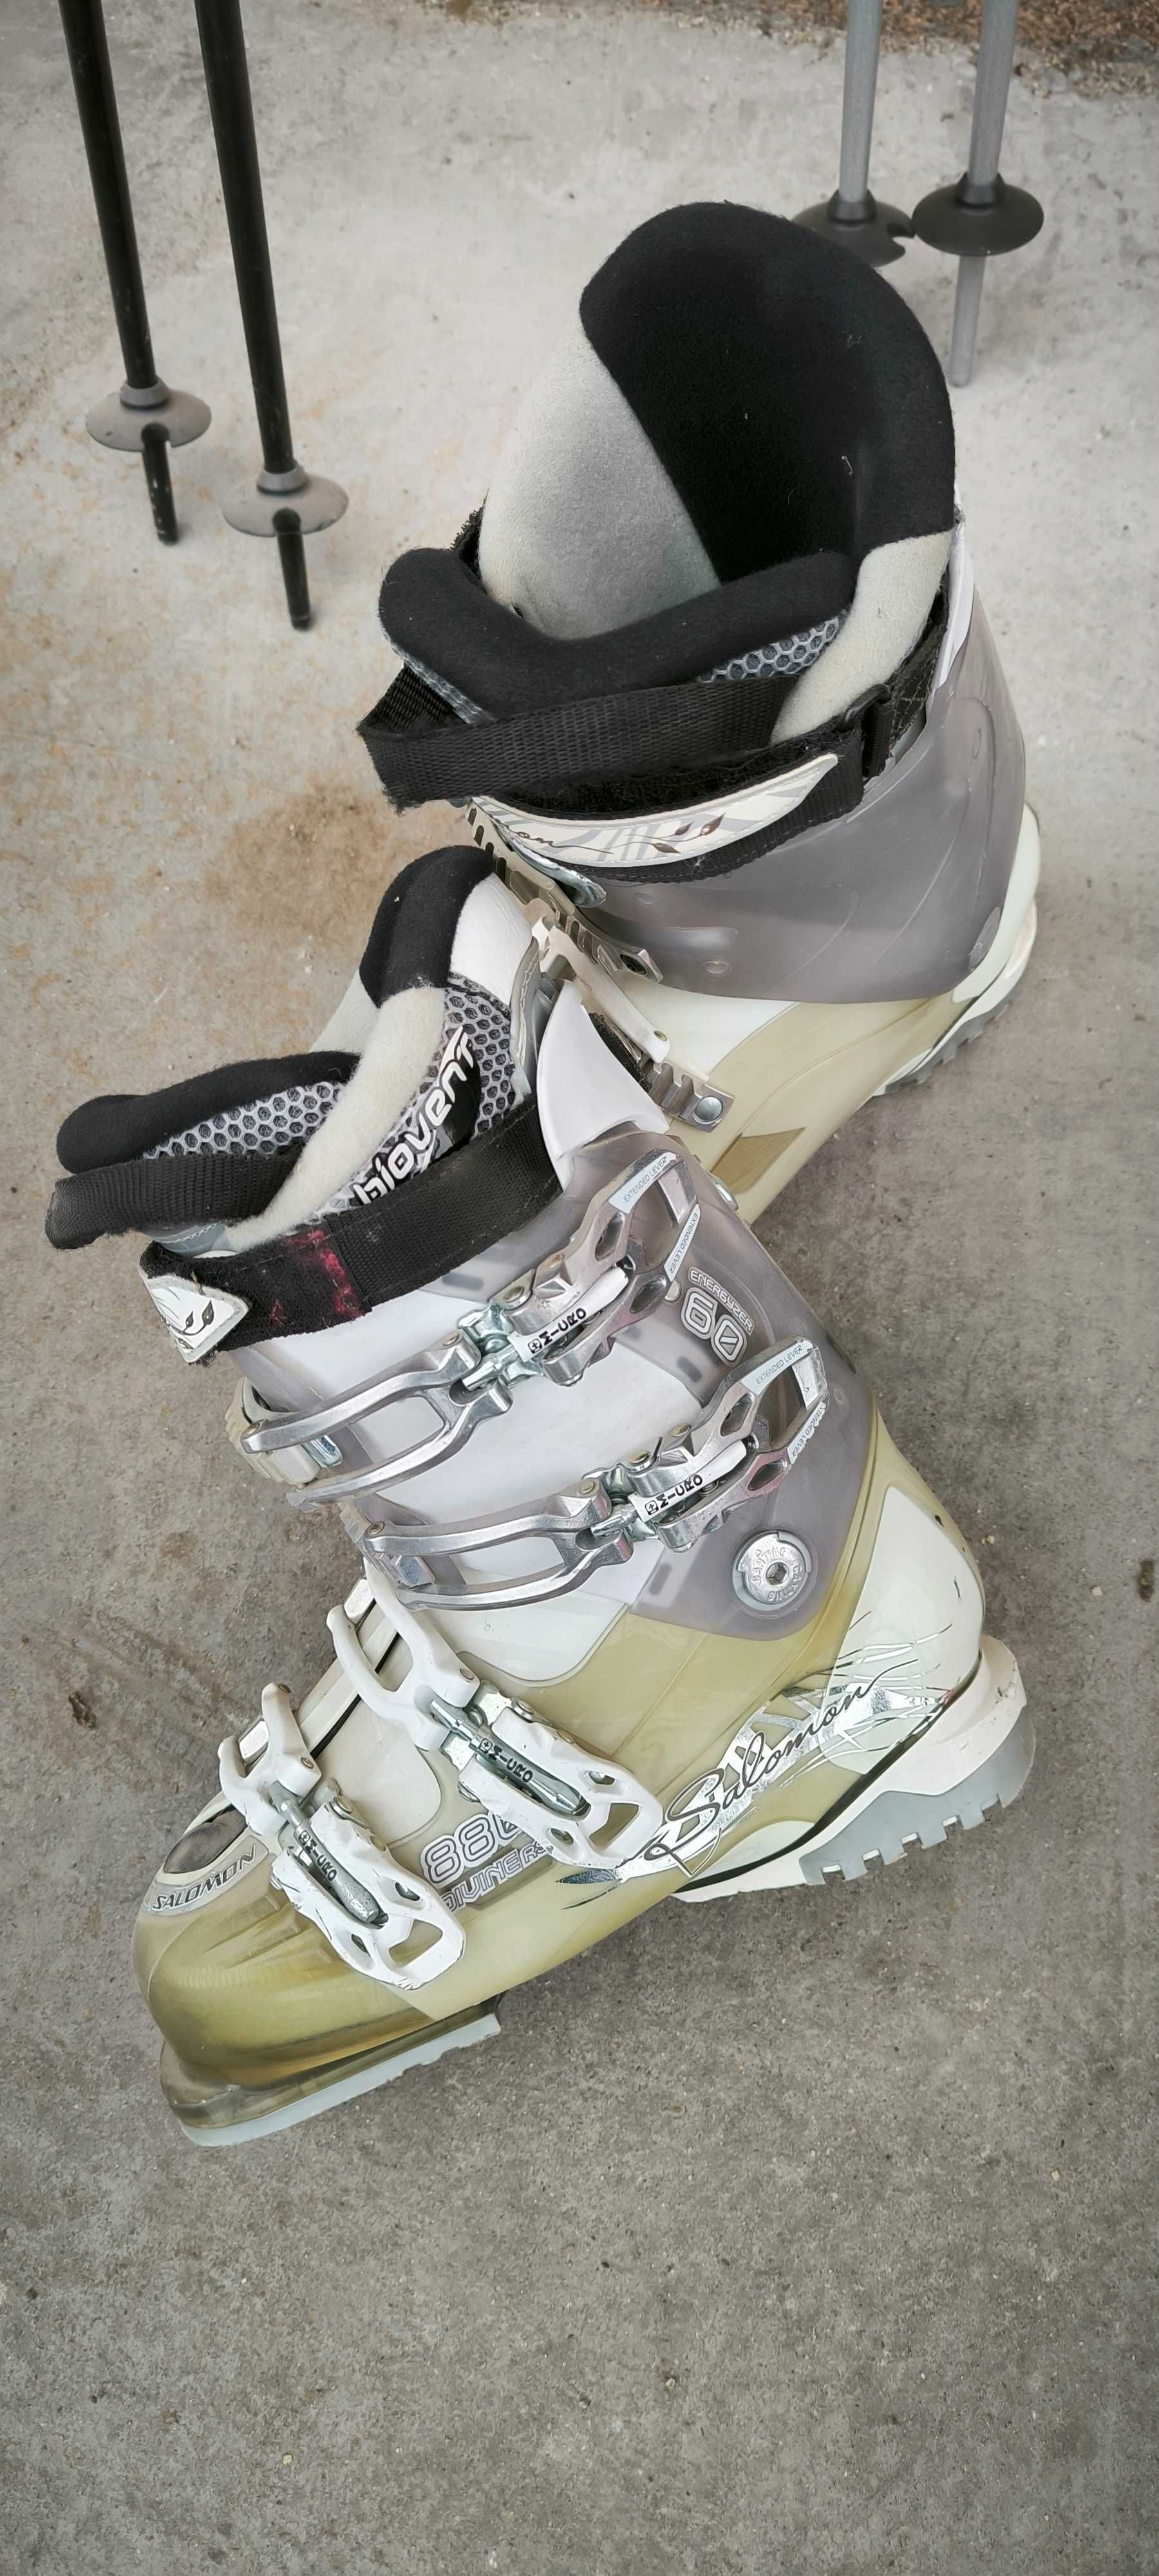 Ски оборудване 3 комплекта - ски, щеки и обувки